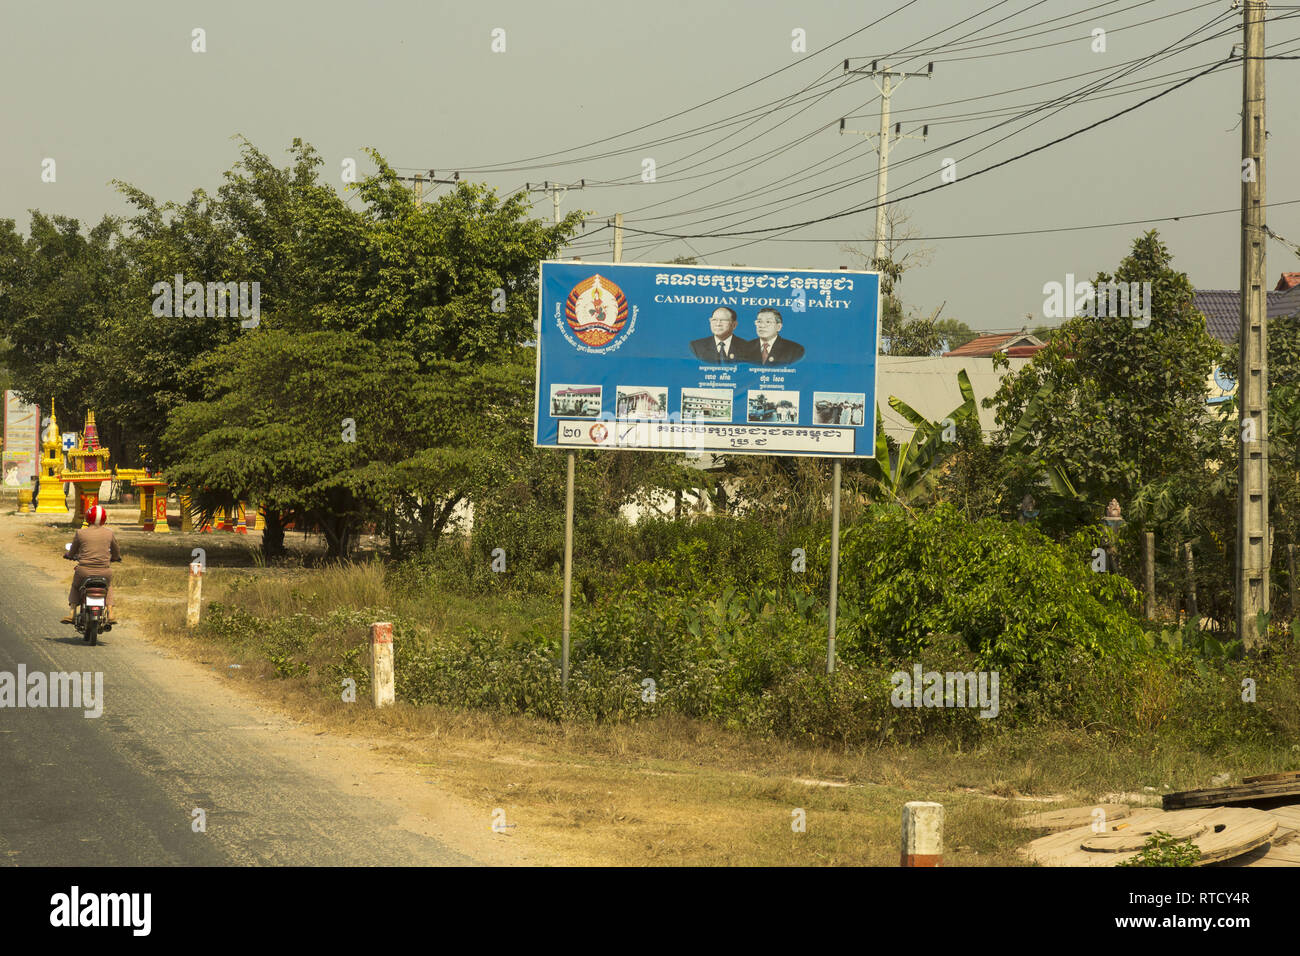 Political billboards in Cambodia Stock Photo